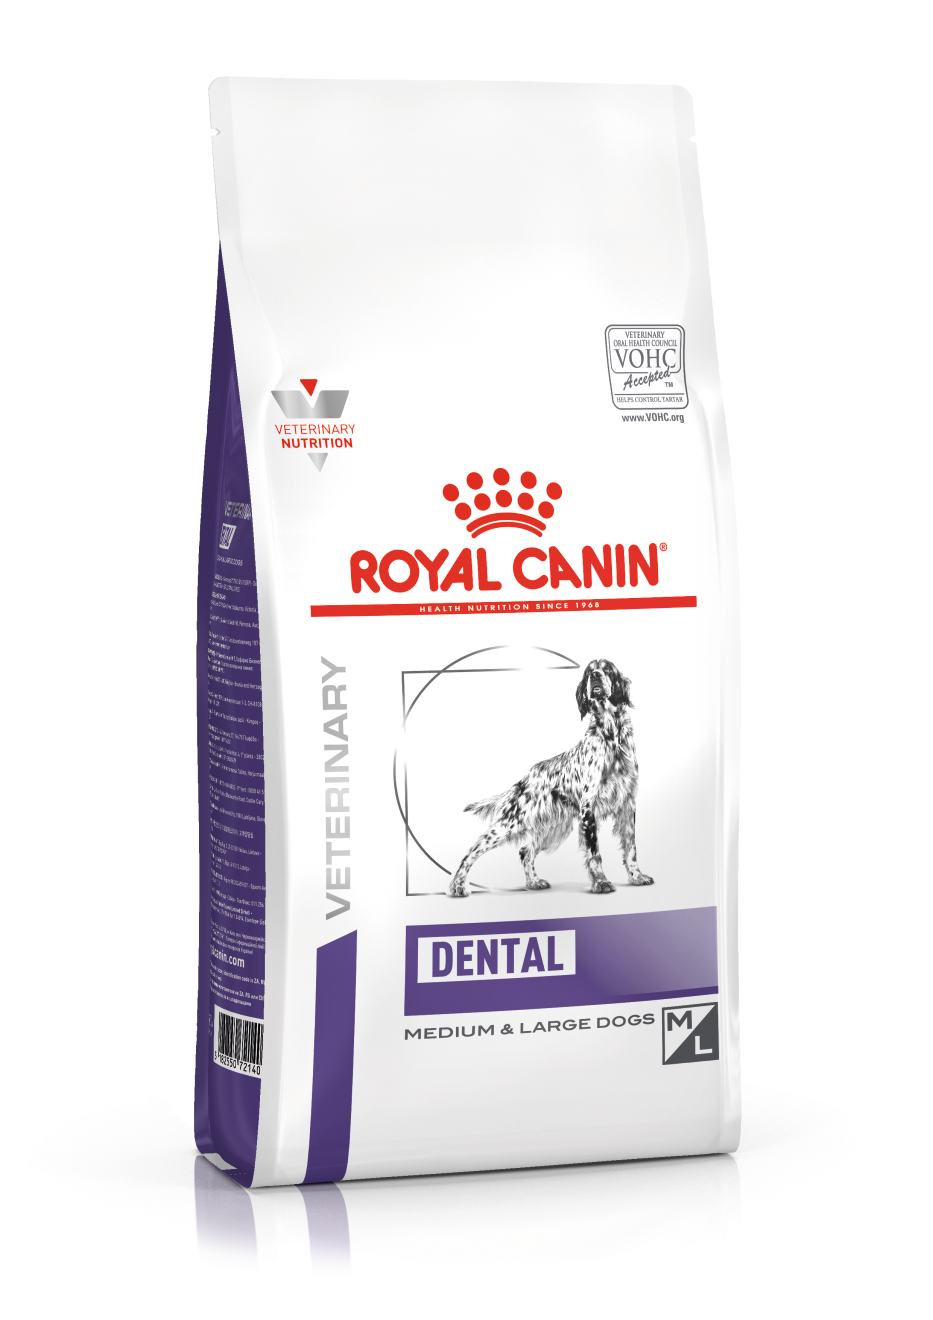 Royal Canin Dental 2 x 13 kg